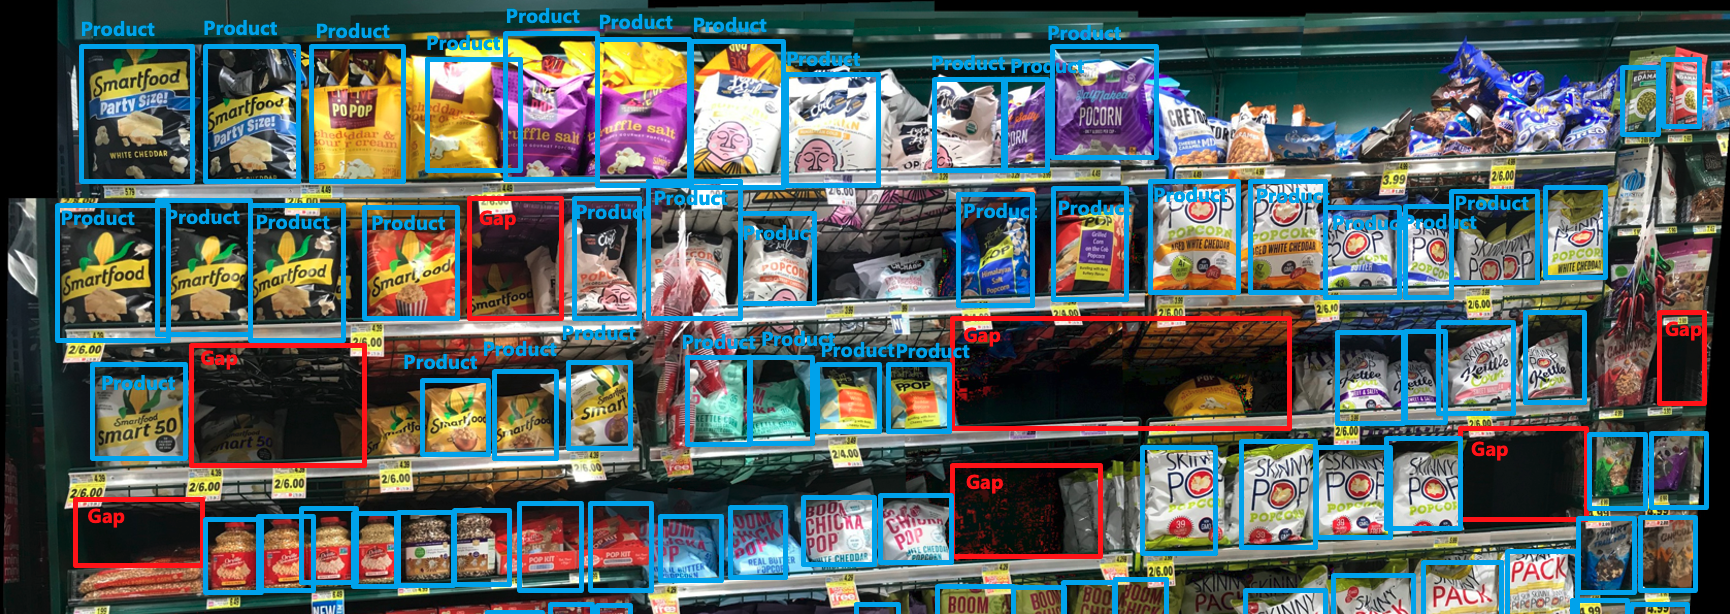 零售貨架的照片，其中產品和間隙透過矩形醒目顯示。